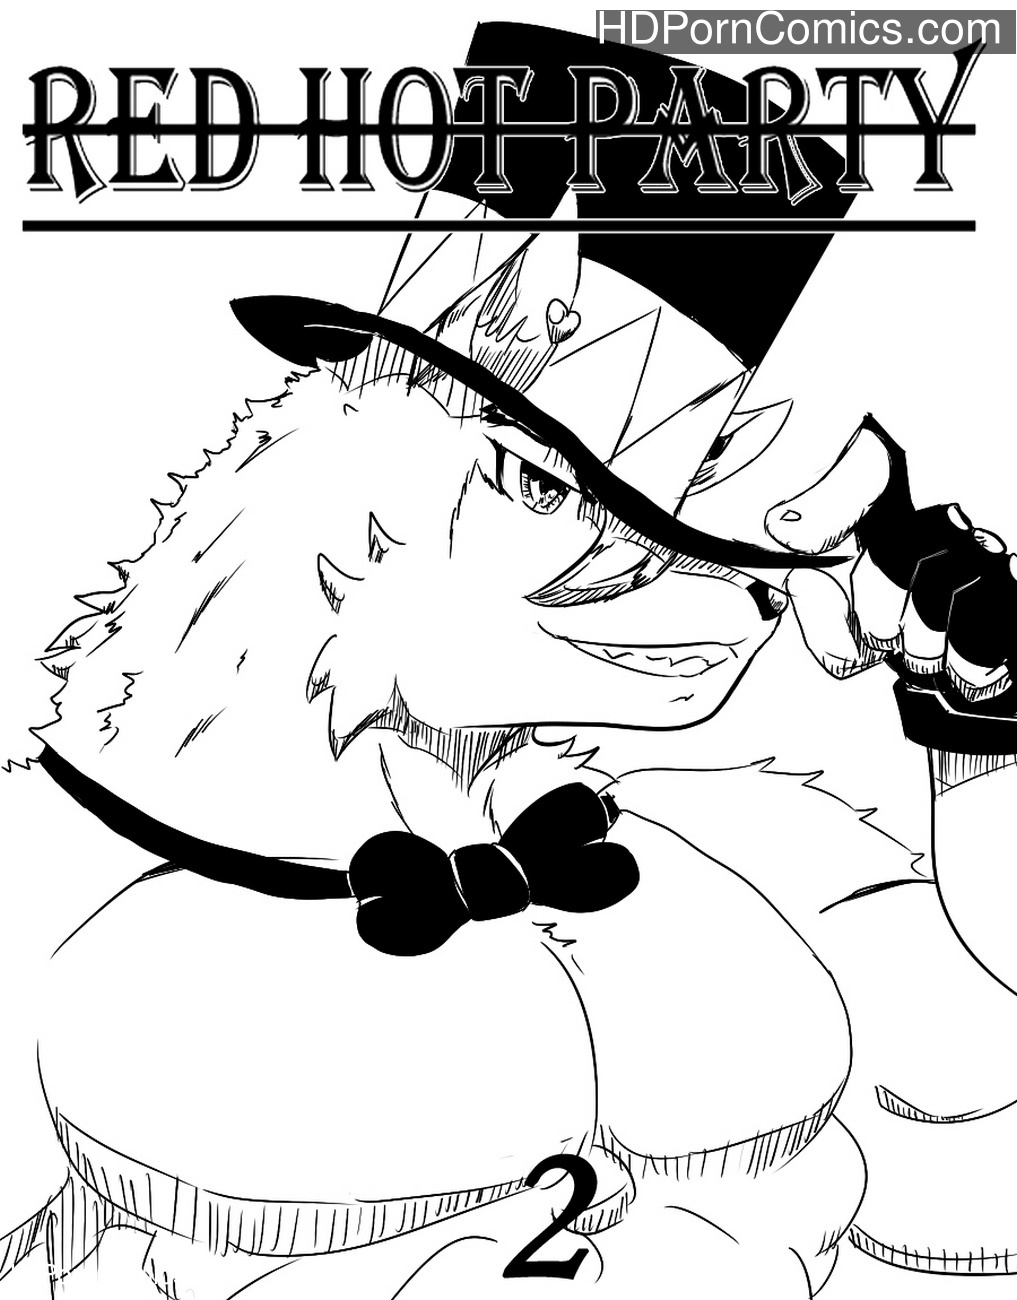 Red Hot Party 2 Sex Comic - HD Porn Comics